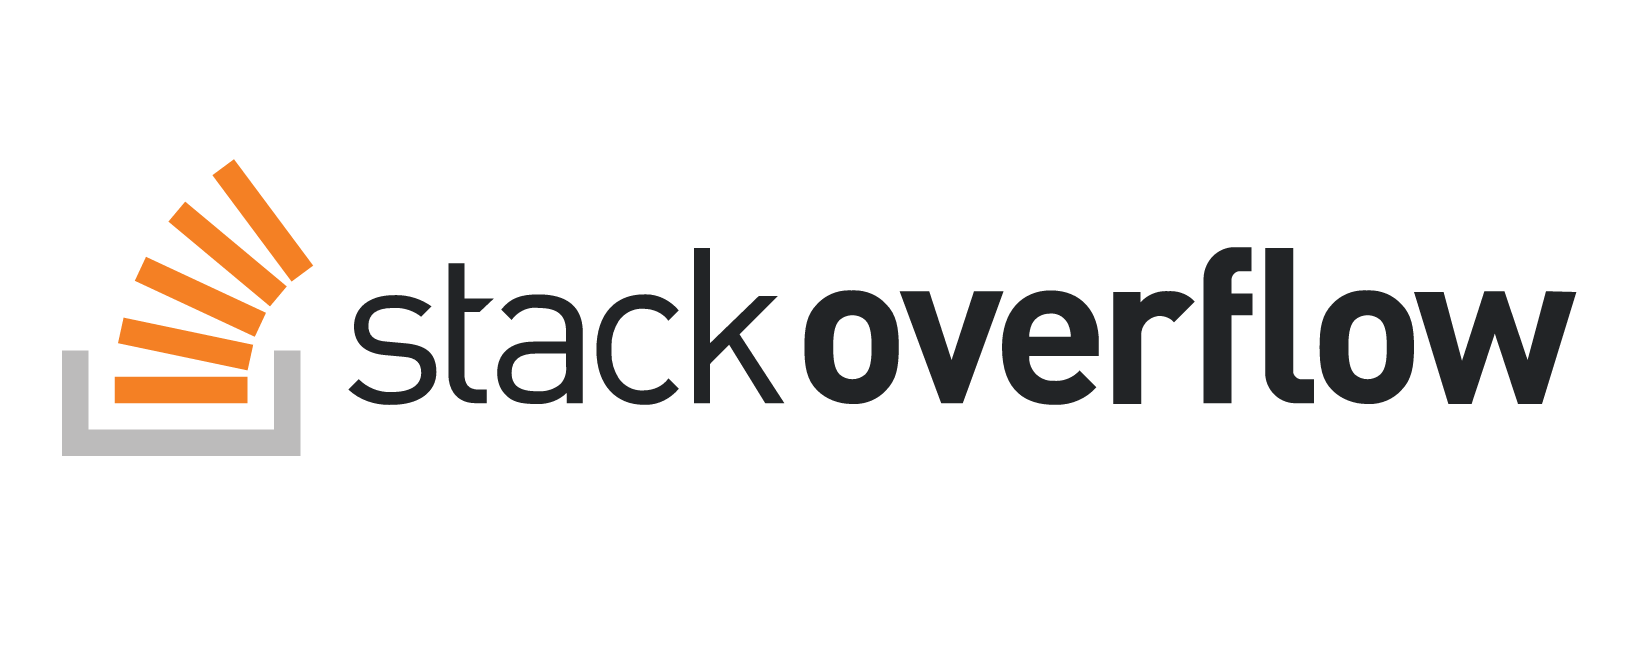 همه چیز درباره Stack Overflow